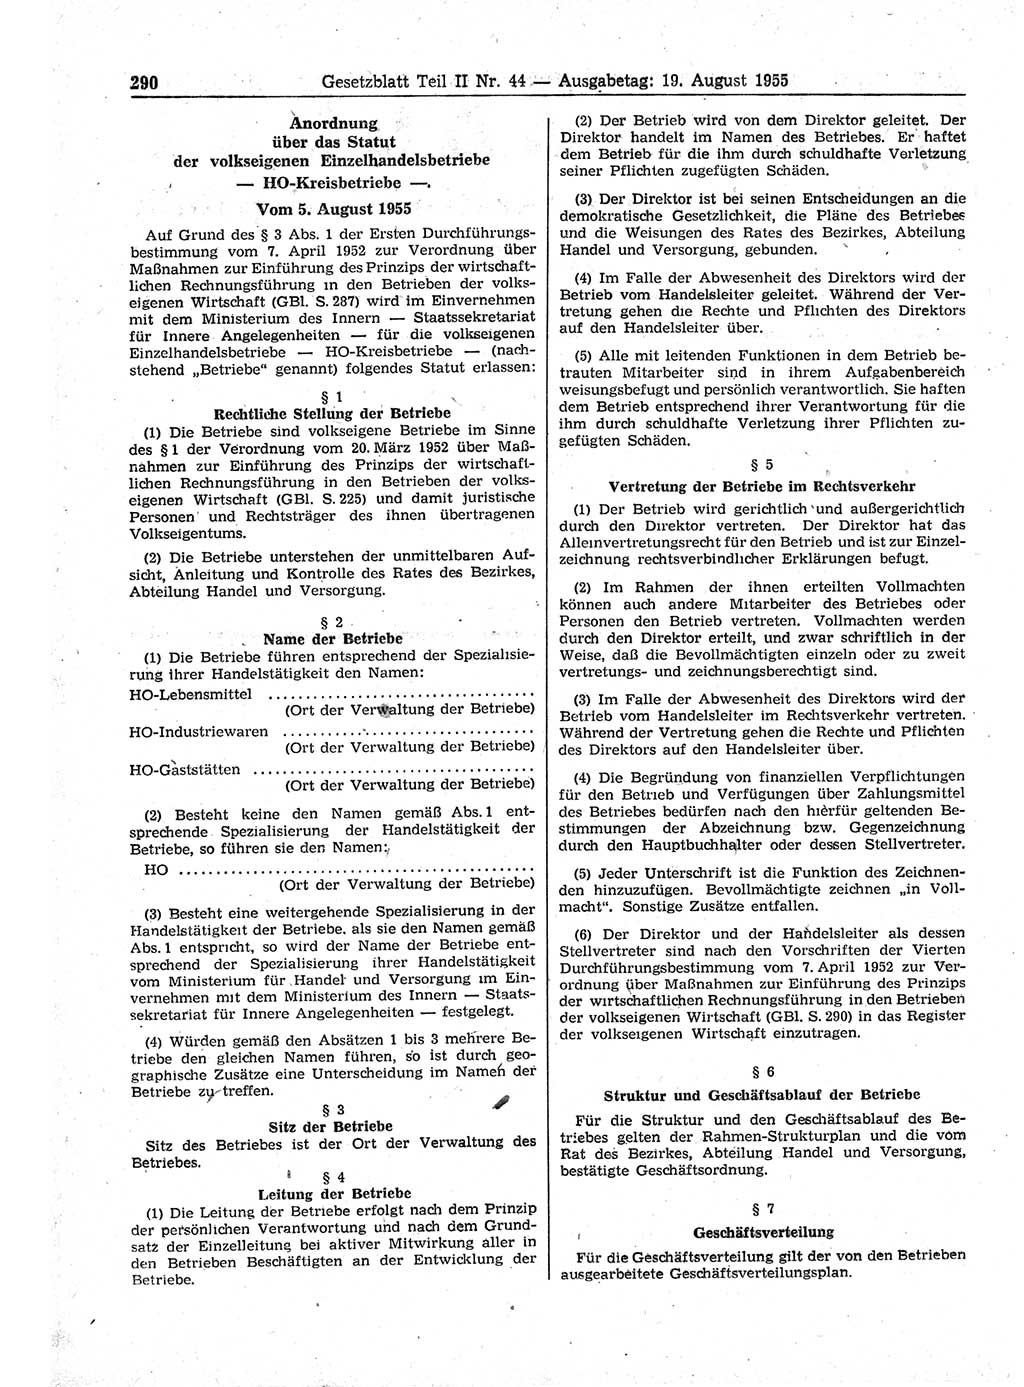 Gesetzblatt (GBl.) der Deutschen Demokratischen Republik (DDR) Teil ⅠⅠ 1955, Seite 290 (GBl. DDR ⅠⅠ 1955, S. 290)